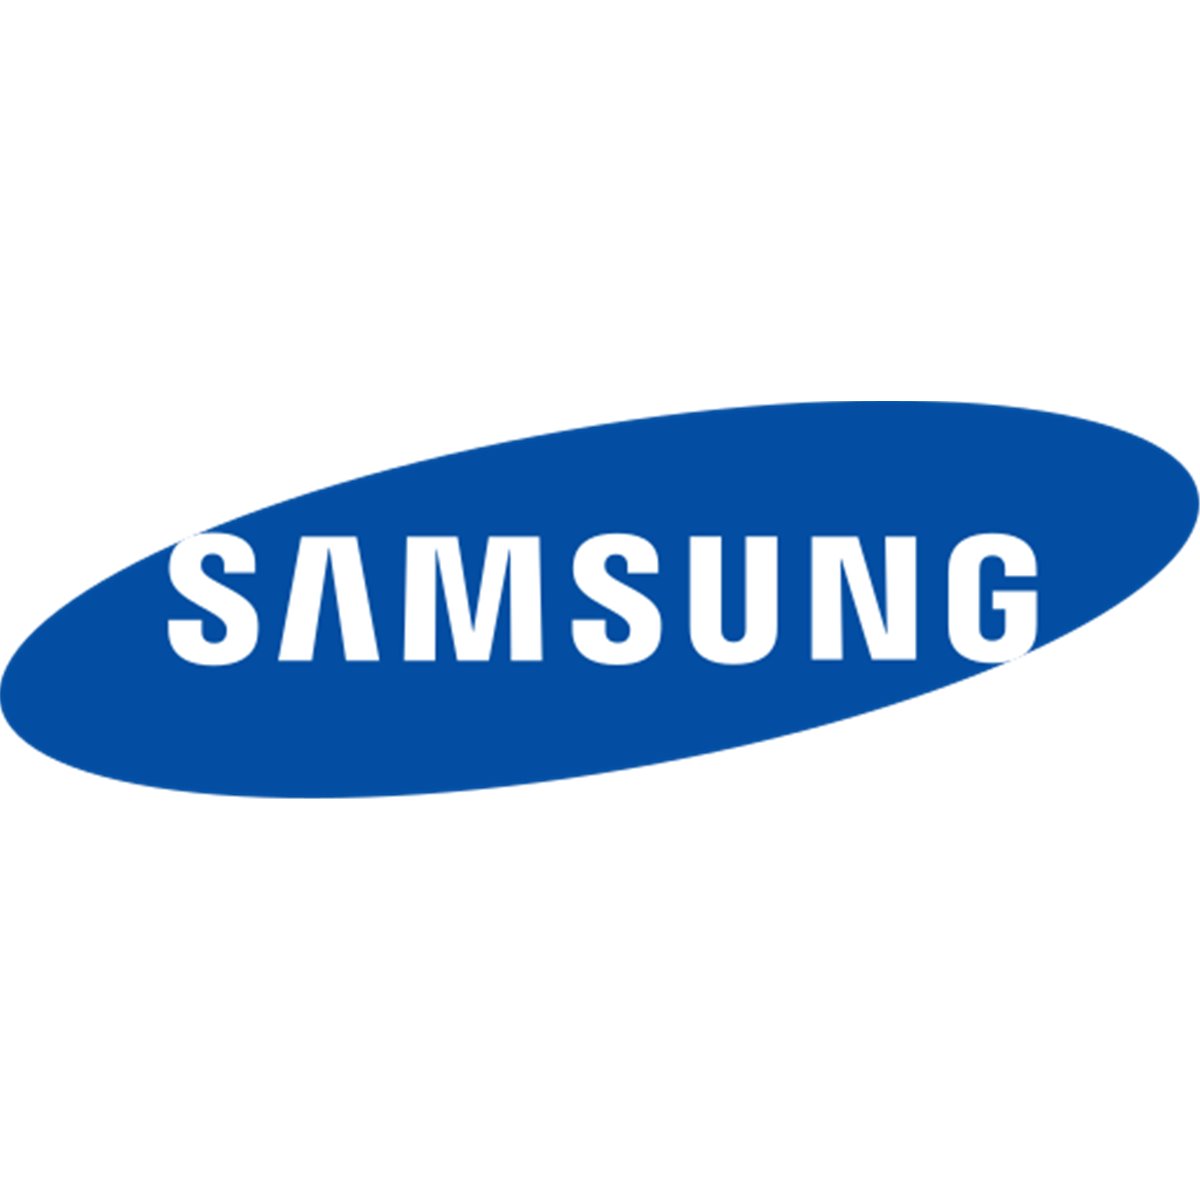 Samsung Cartridge-DEVE KSL-X7600 FRU 300KP 1080